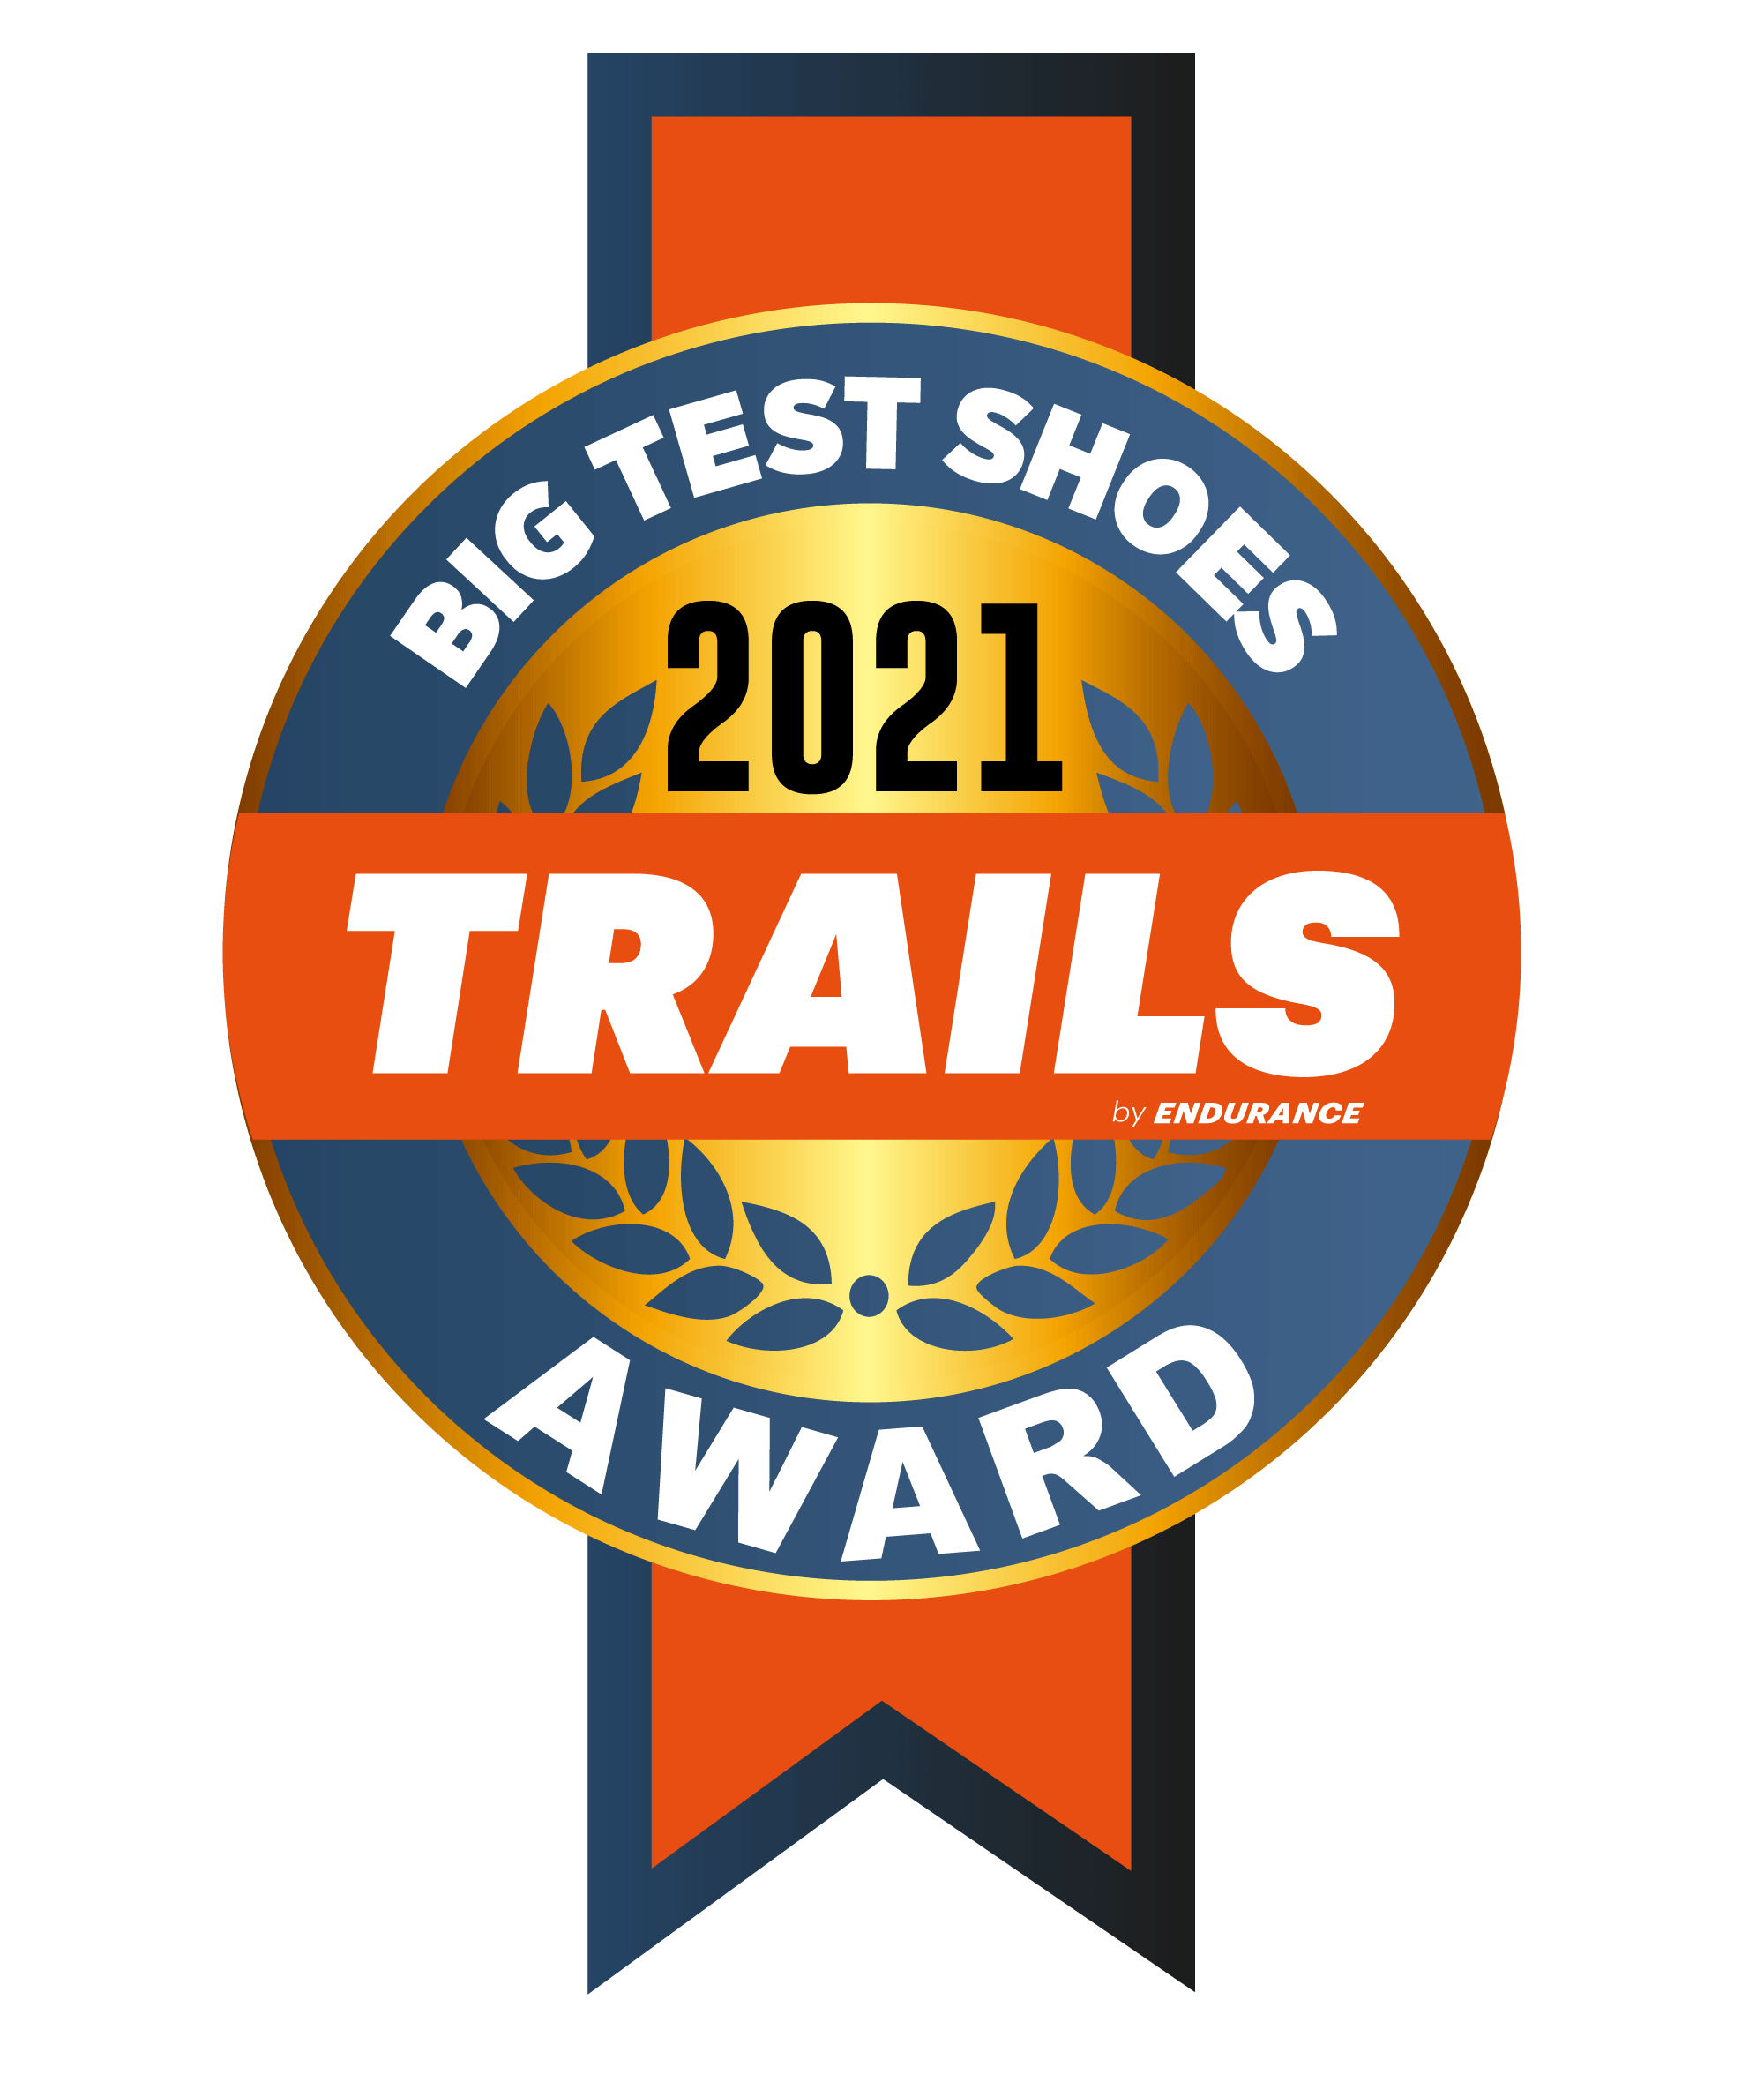 Big Test Shoes Trail 2021 - EN